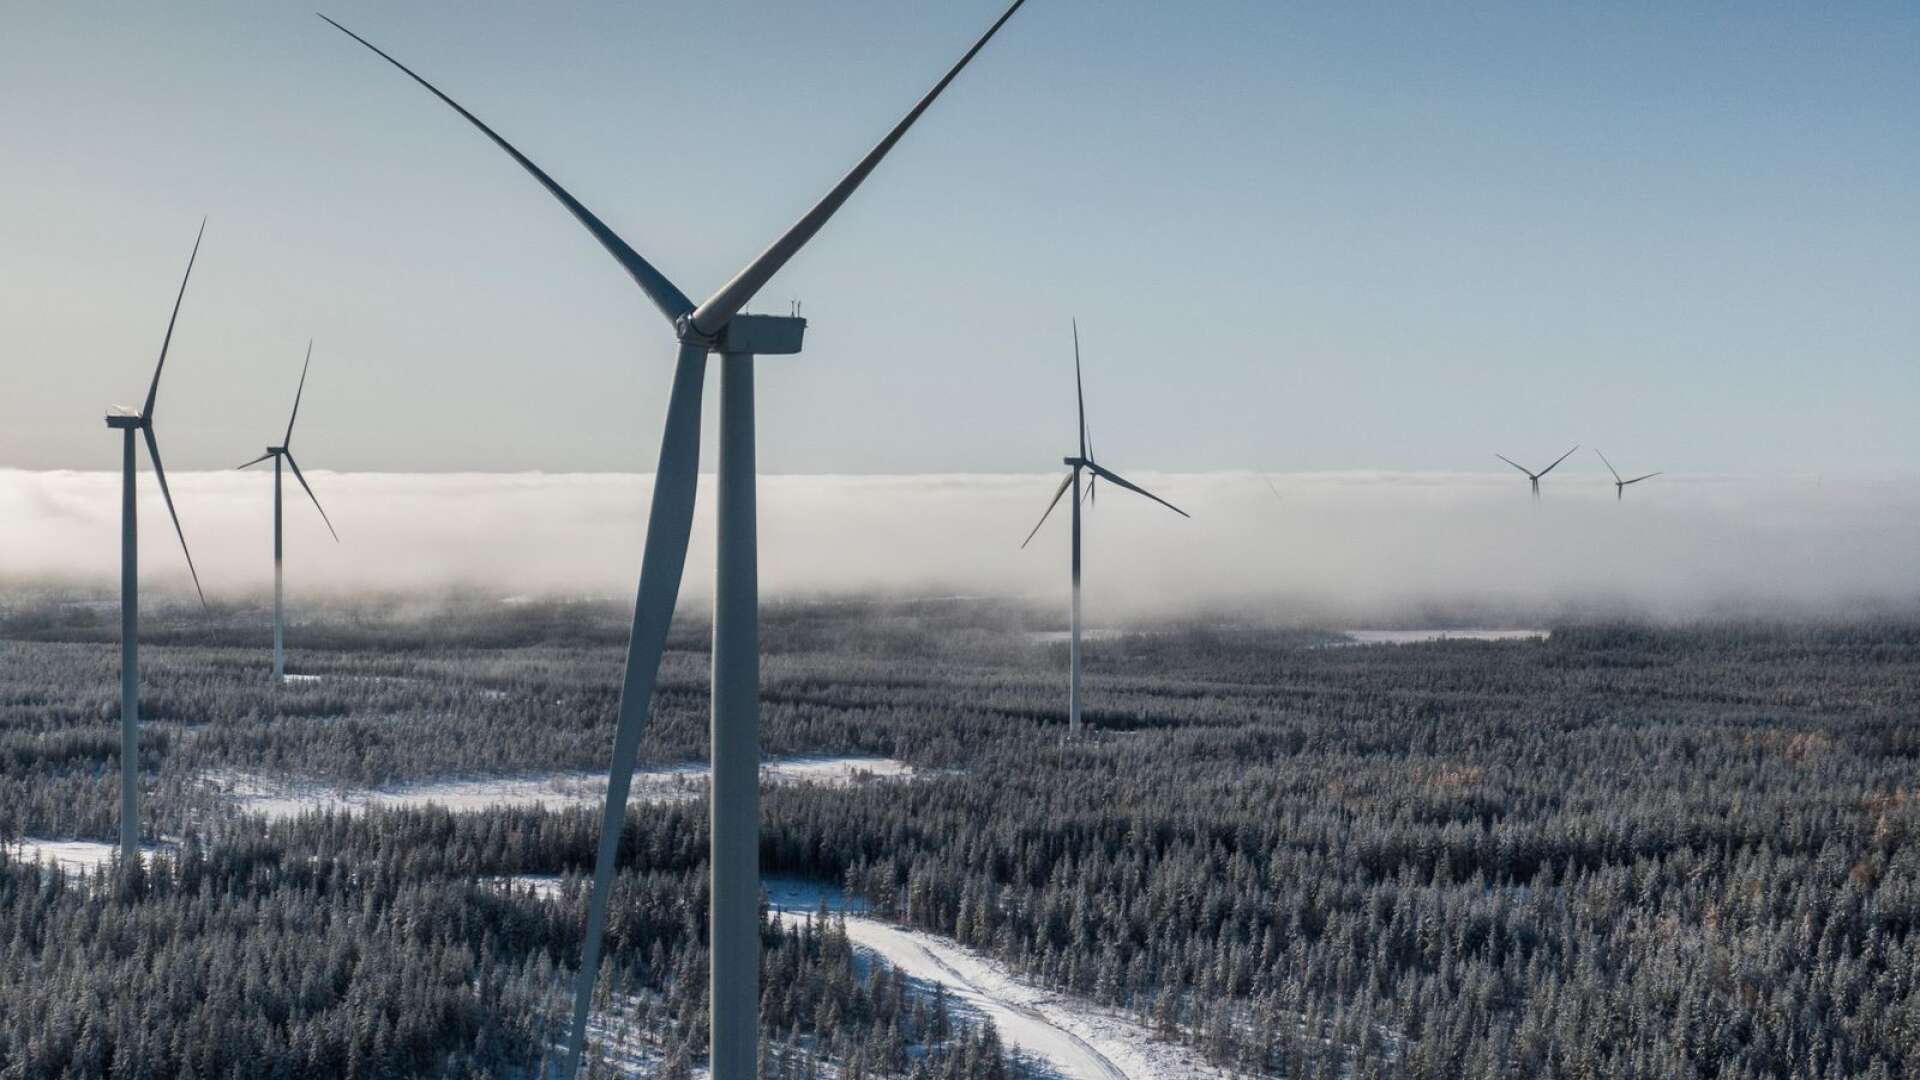 Uppförande av stora vindkraftverk för med sig betydande lokala konsekvenser såsom fördärvade natur- och kulturvärden, estetiska samt landskapsbildsmässiga värden, skriver Mattias Bäckström Johansson och Runar Filper.